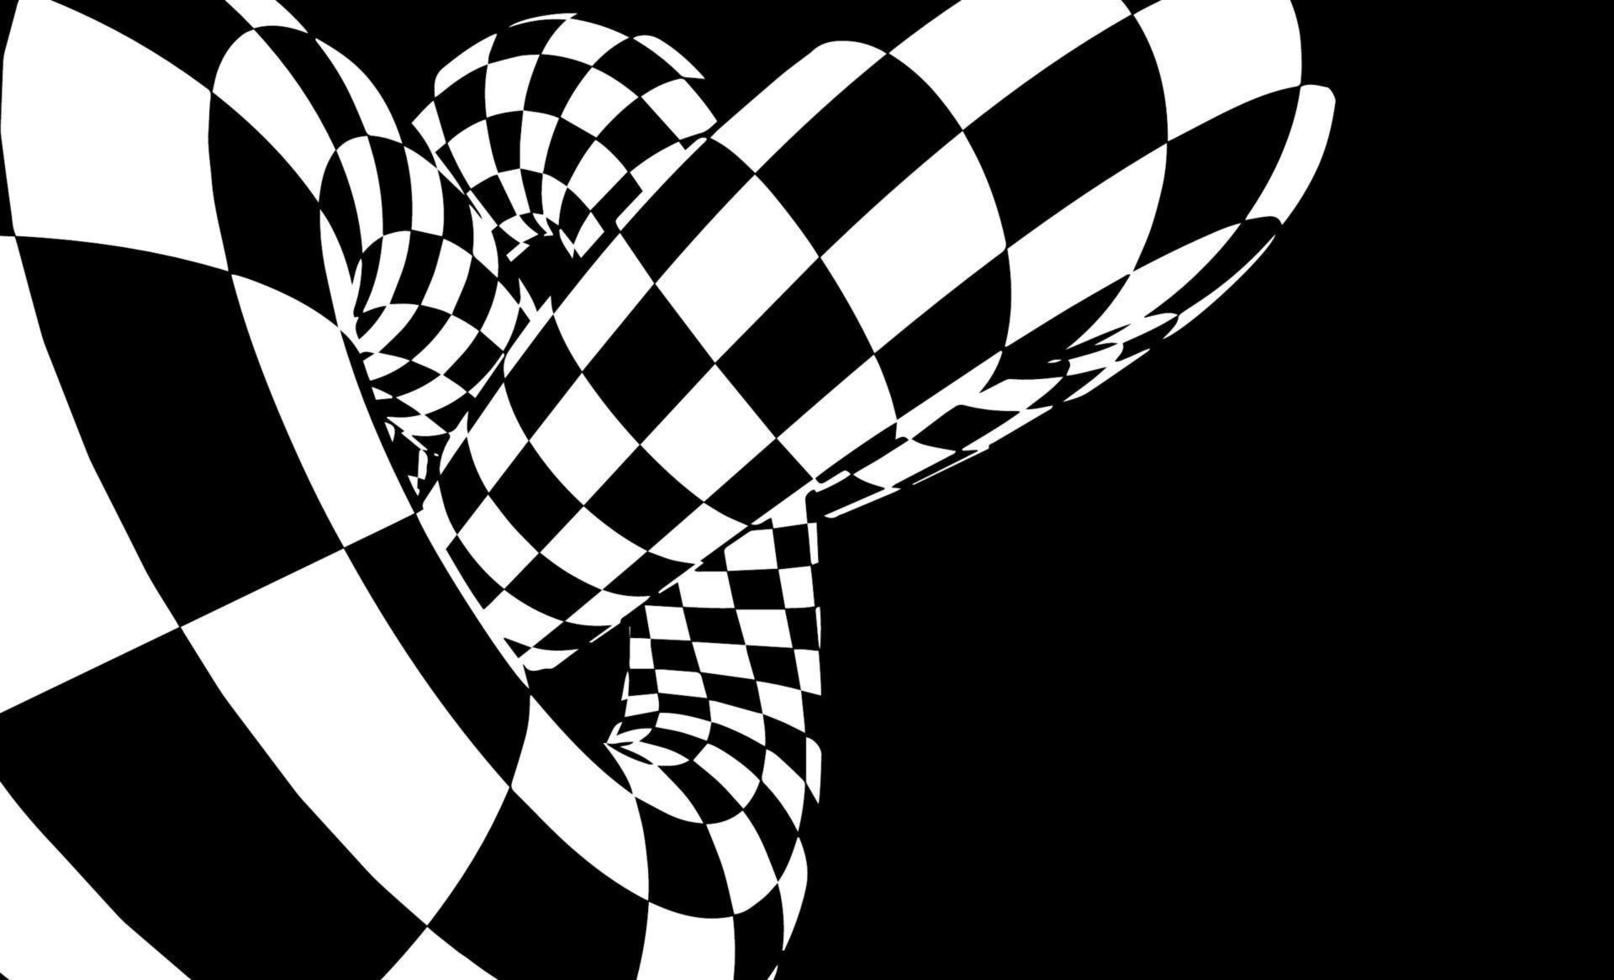 scacchi toro vettore illustrazione eps 10. ottico illusione vettore. gara campionato sfondo.